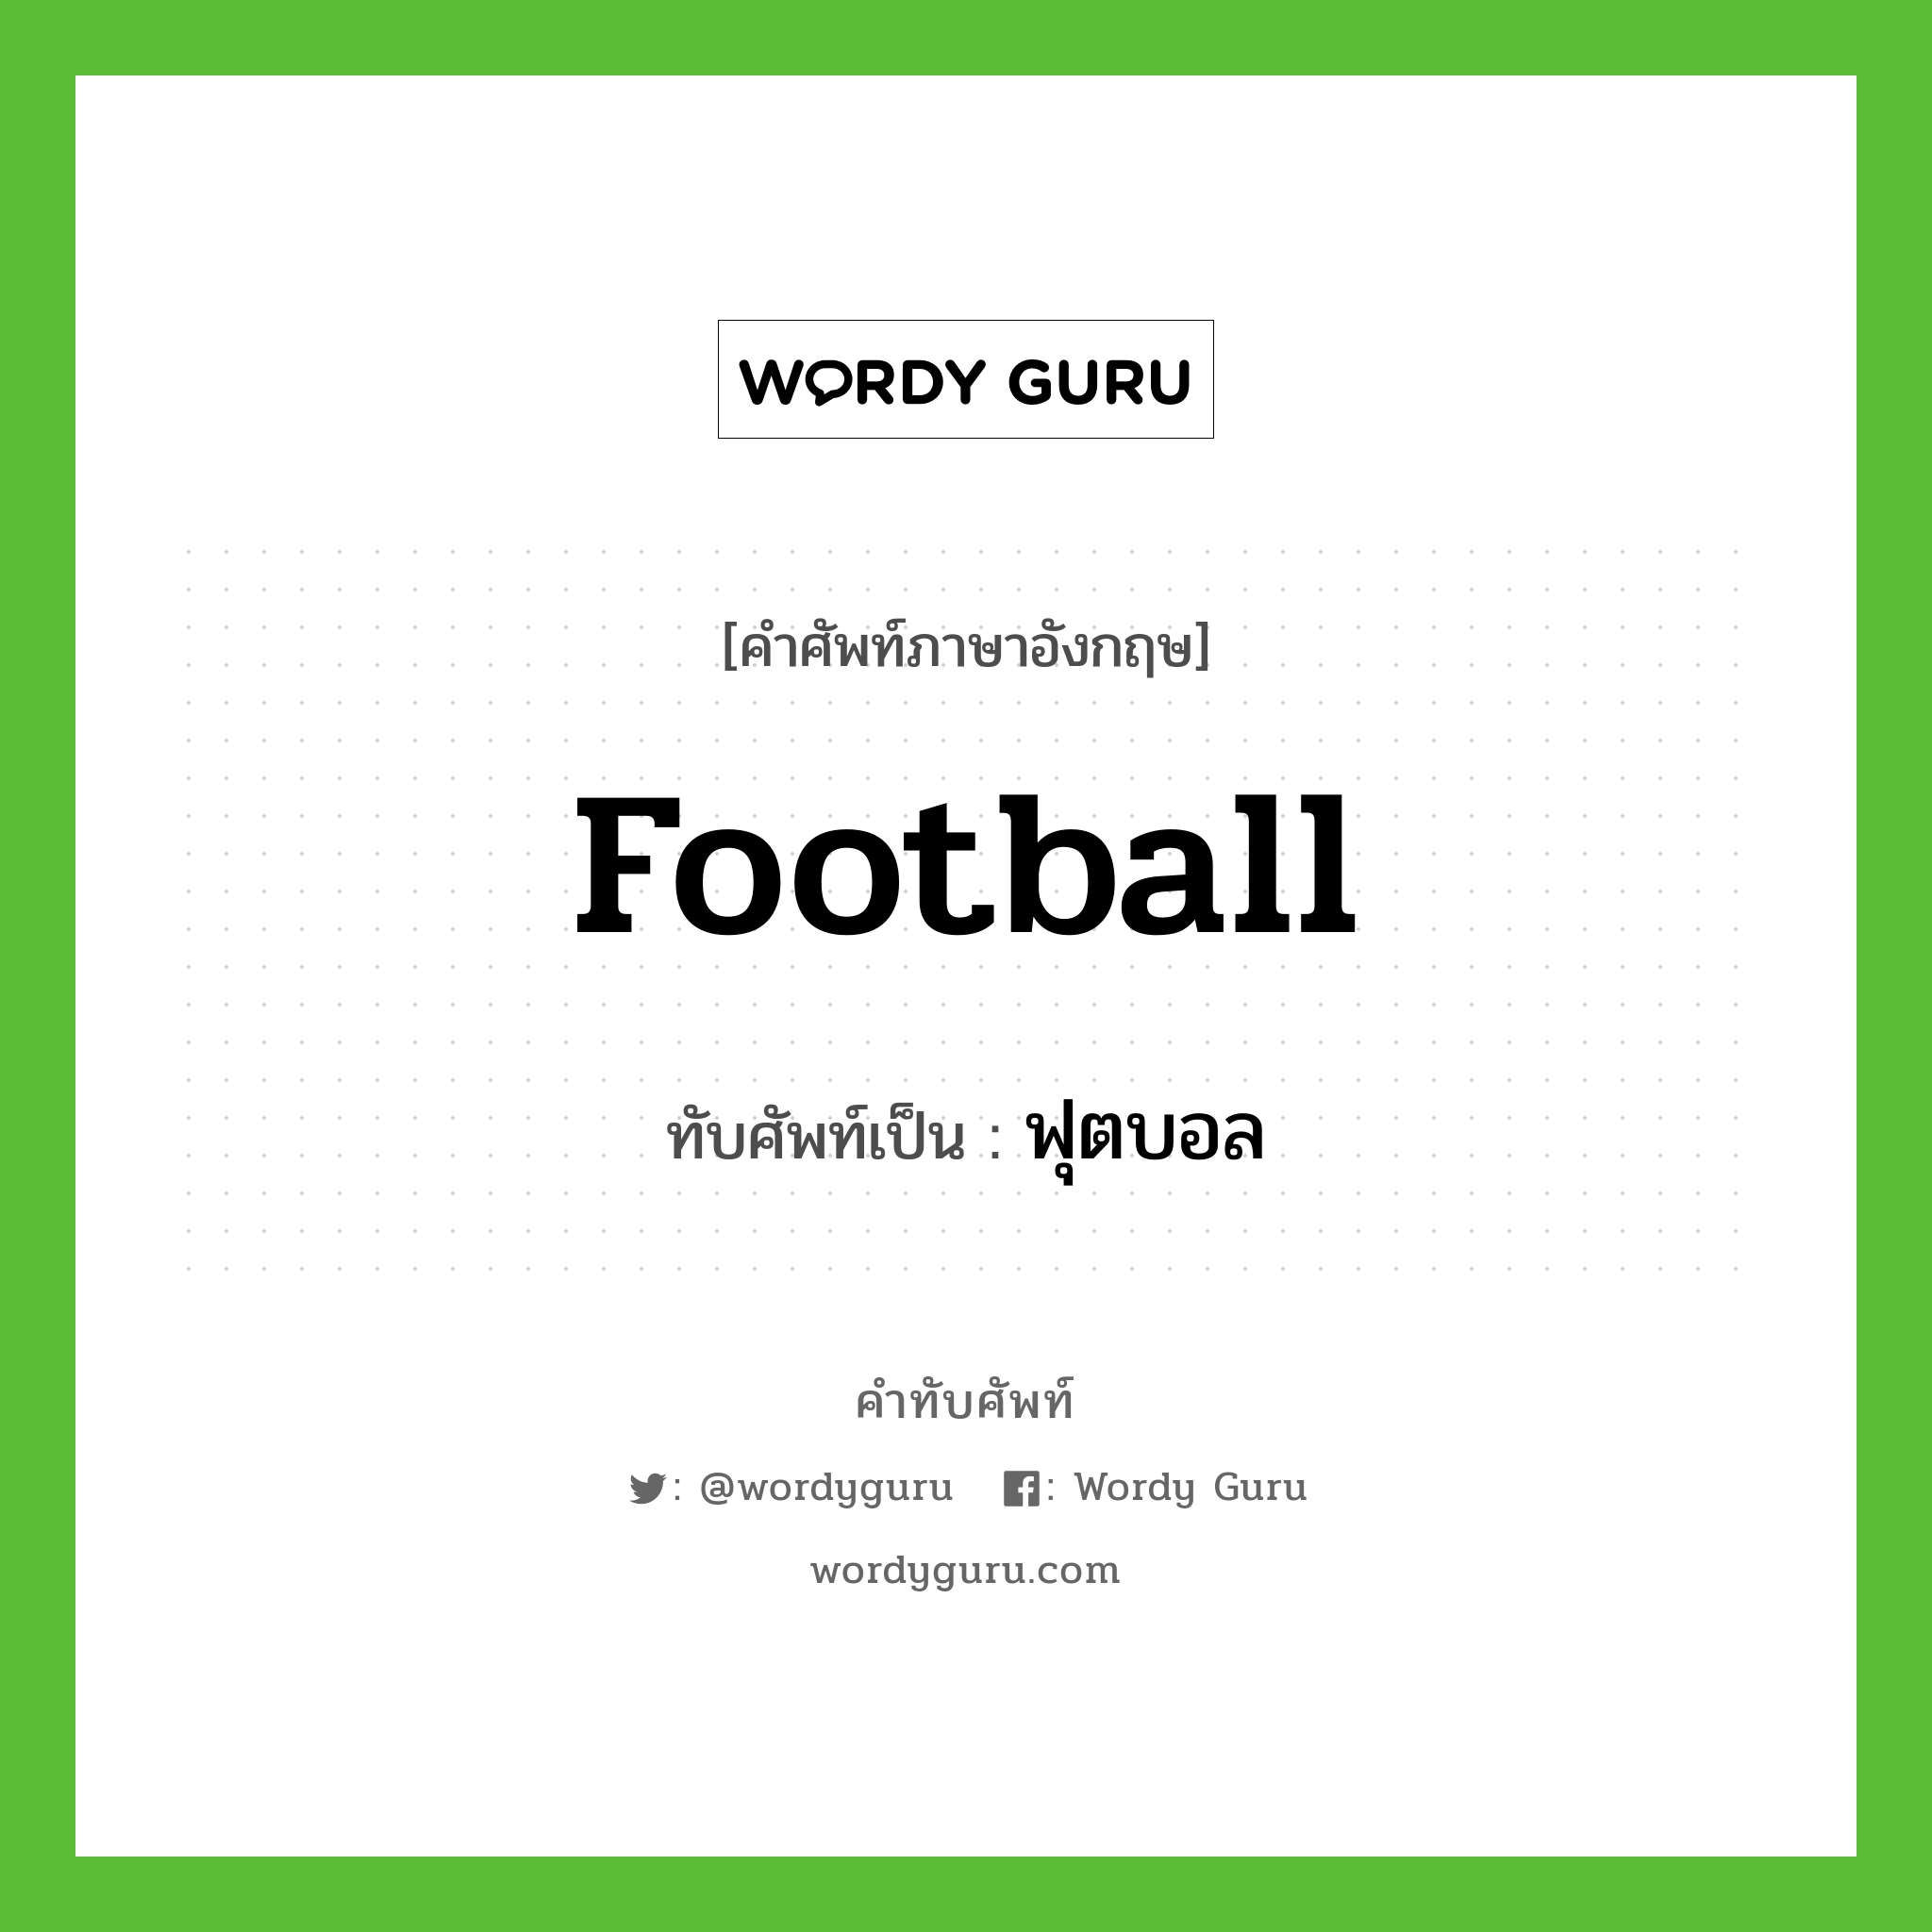 football เขียนเป็นคำไทยว่าอะไร?, คำศัพท์ภาษาอังกฤษ football ทับศัพท์เป็น ฟุตบอล